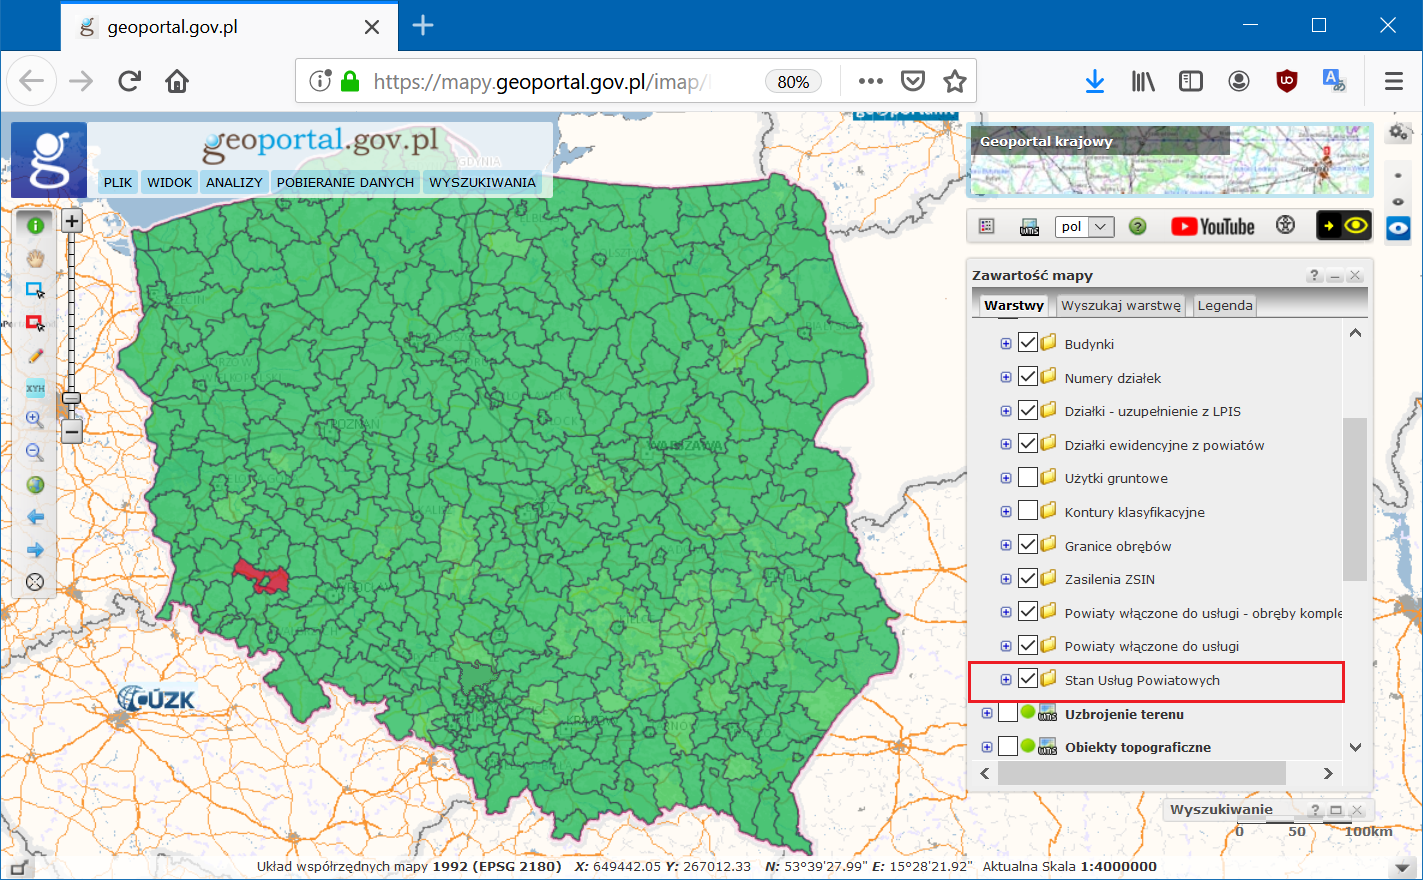 Ilustracja przedstawia zrzut ekranu ze strony geoportal.gov.pl, na którym znajduje się mapa Polski z podziałem na powiaty. Powiat legnicki oznaczony jest kolorem czerwonym, pozostałe zaś na zielono.